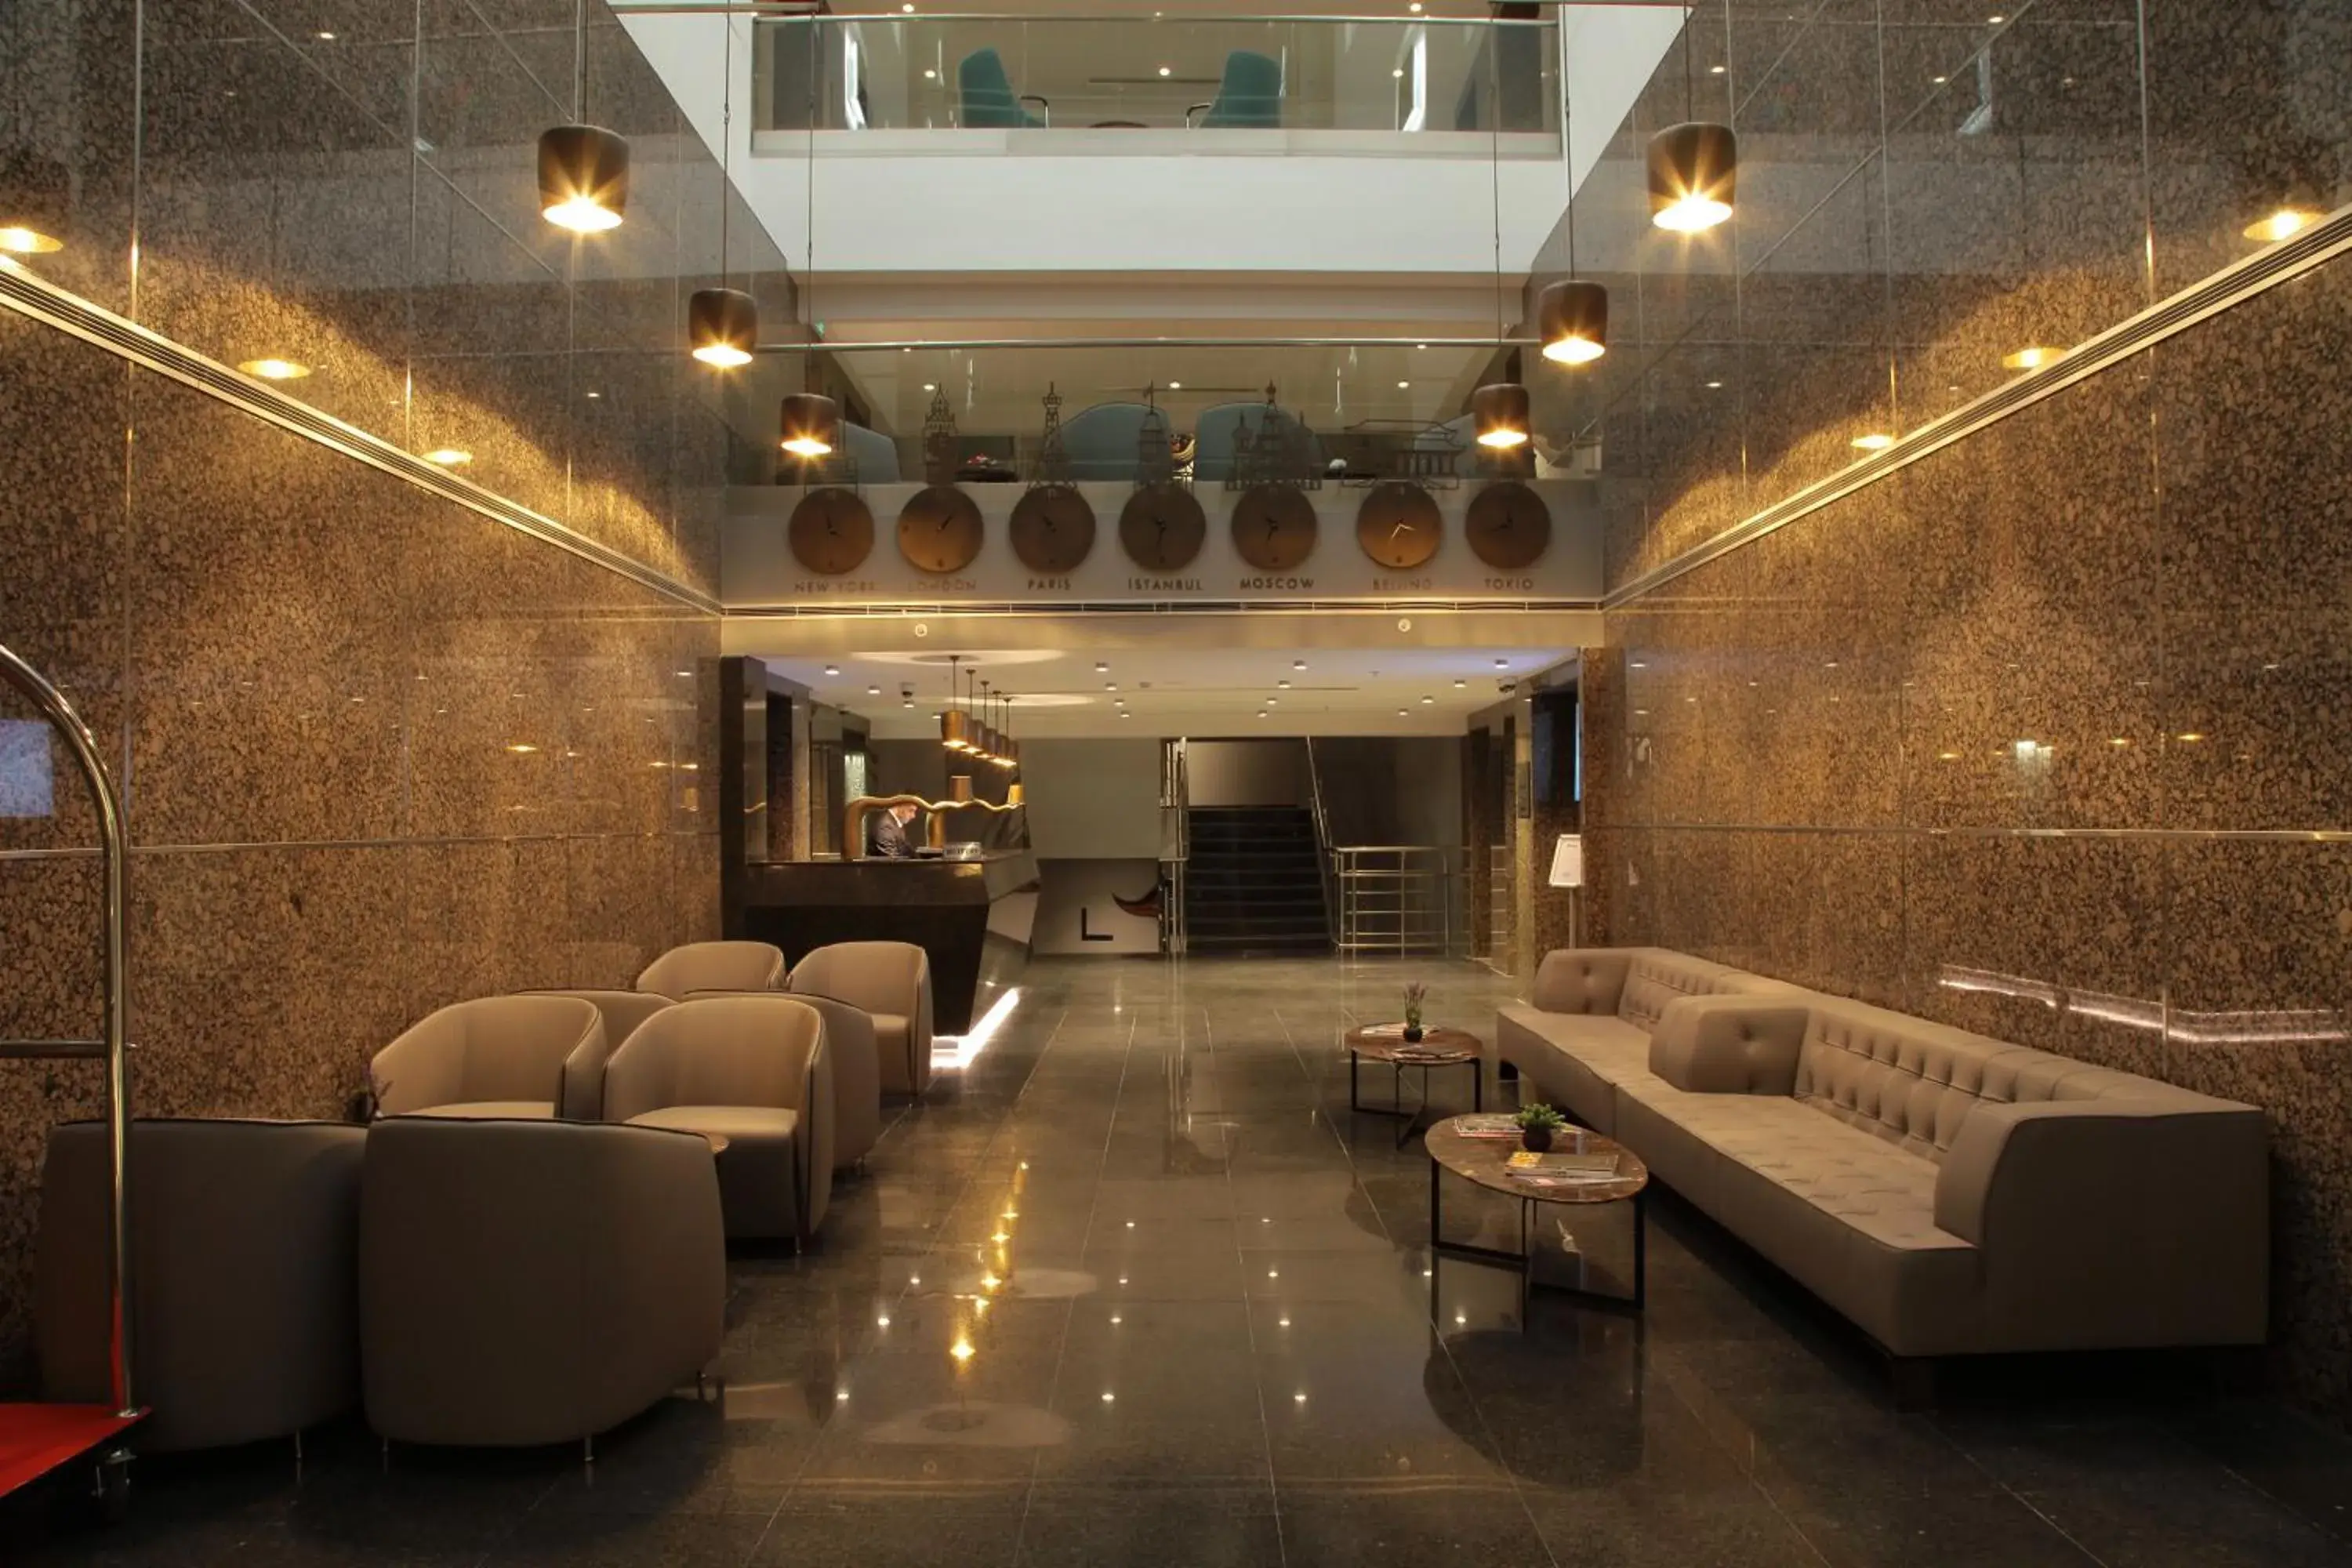 Lobby or reception in Bricks Hotel İstanbul